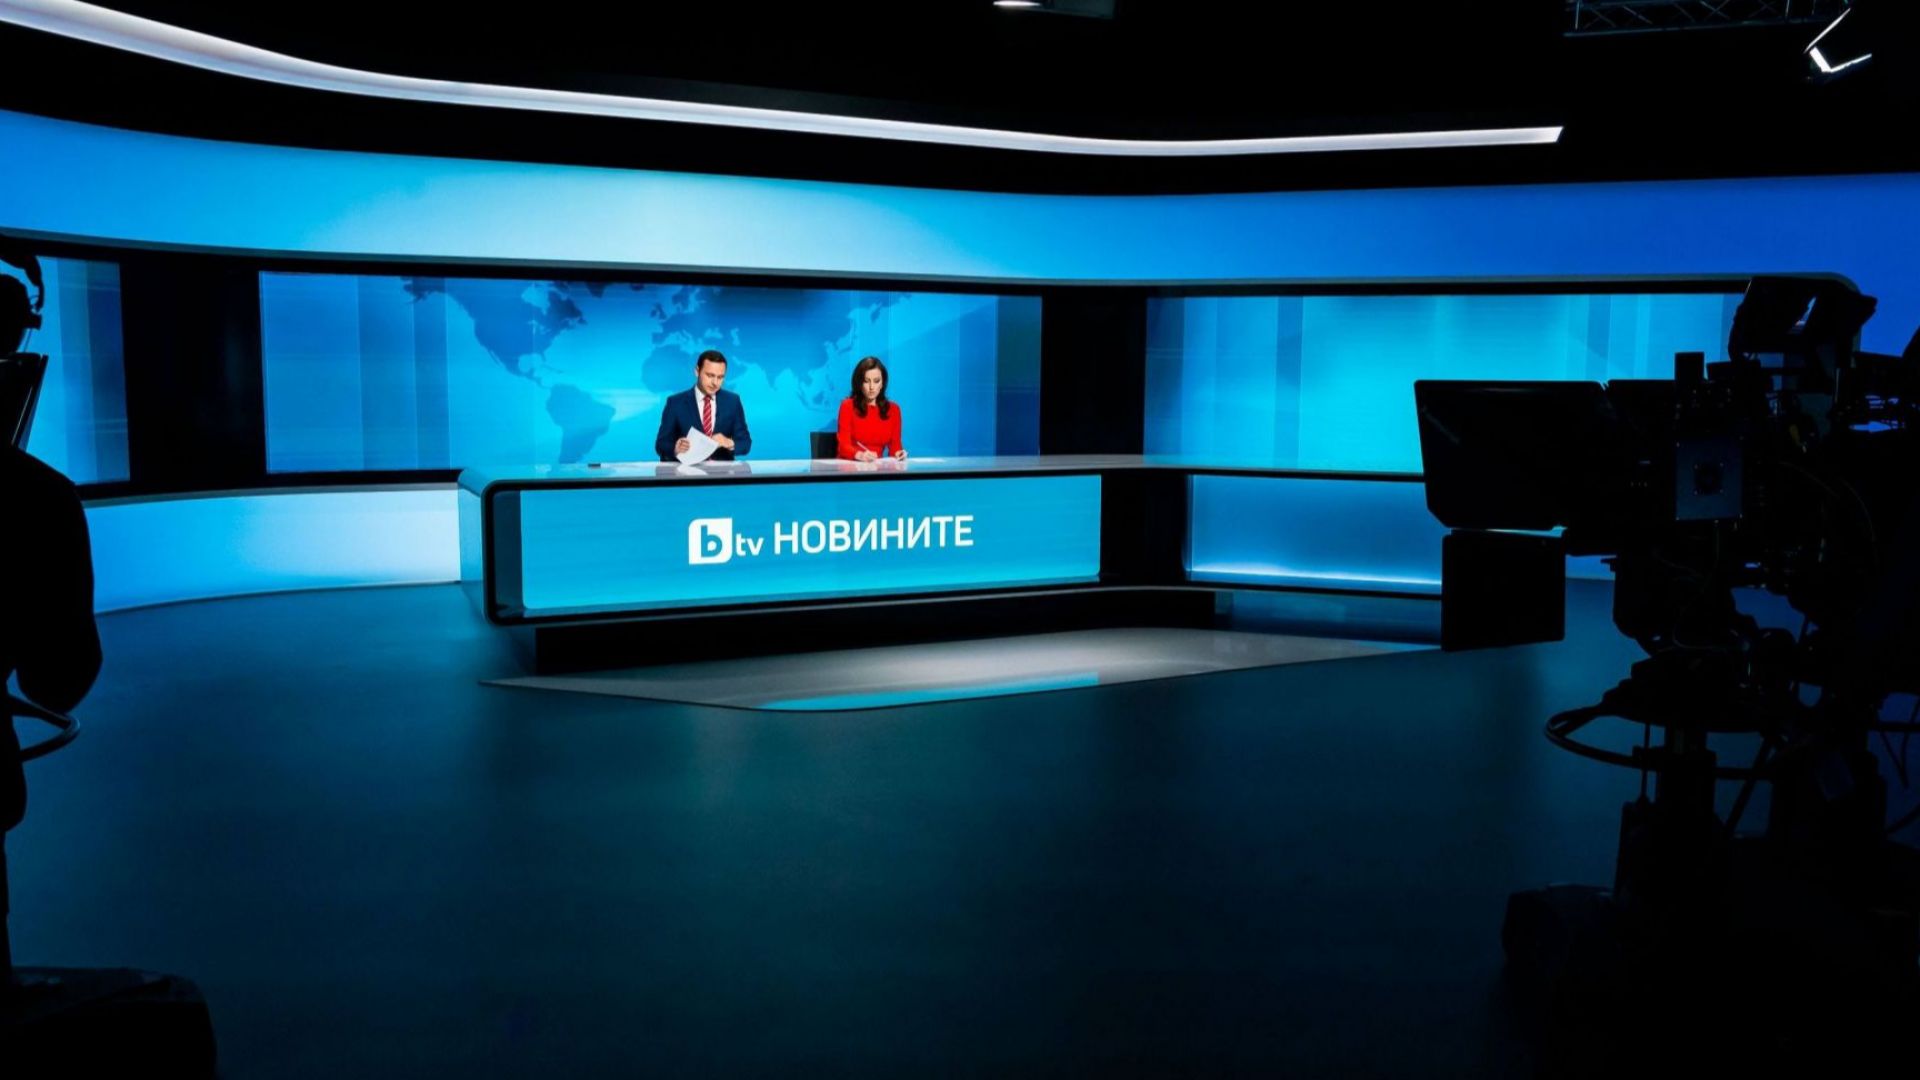 Българските зрители оценяват високо пренасочването на фокуса върху новини и